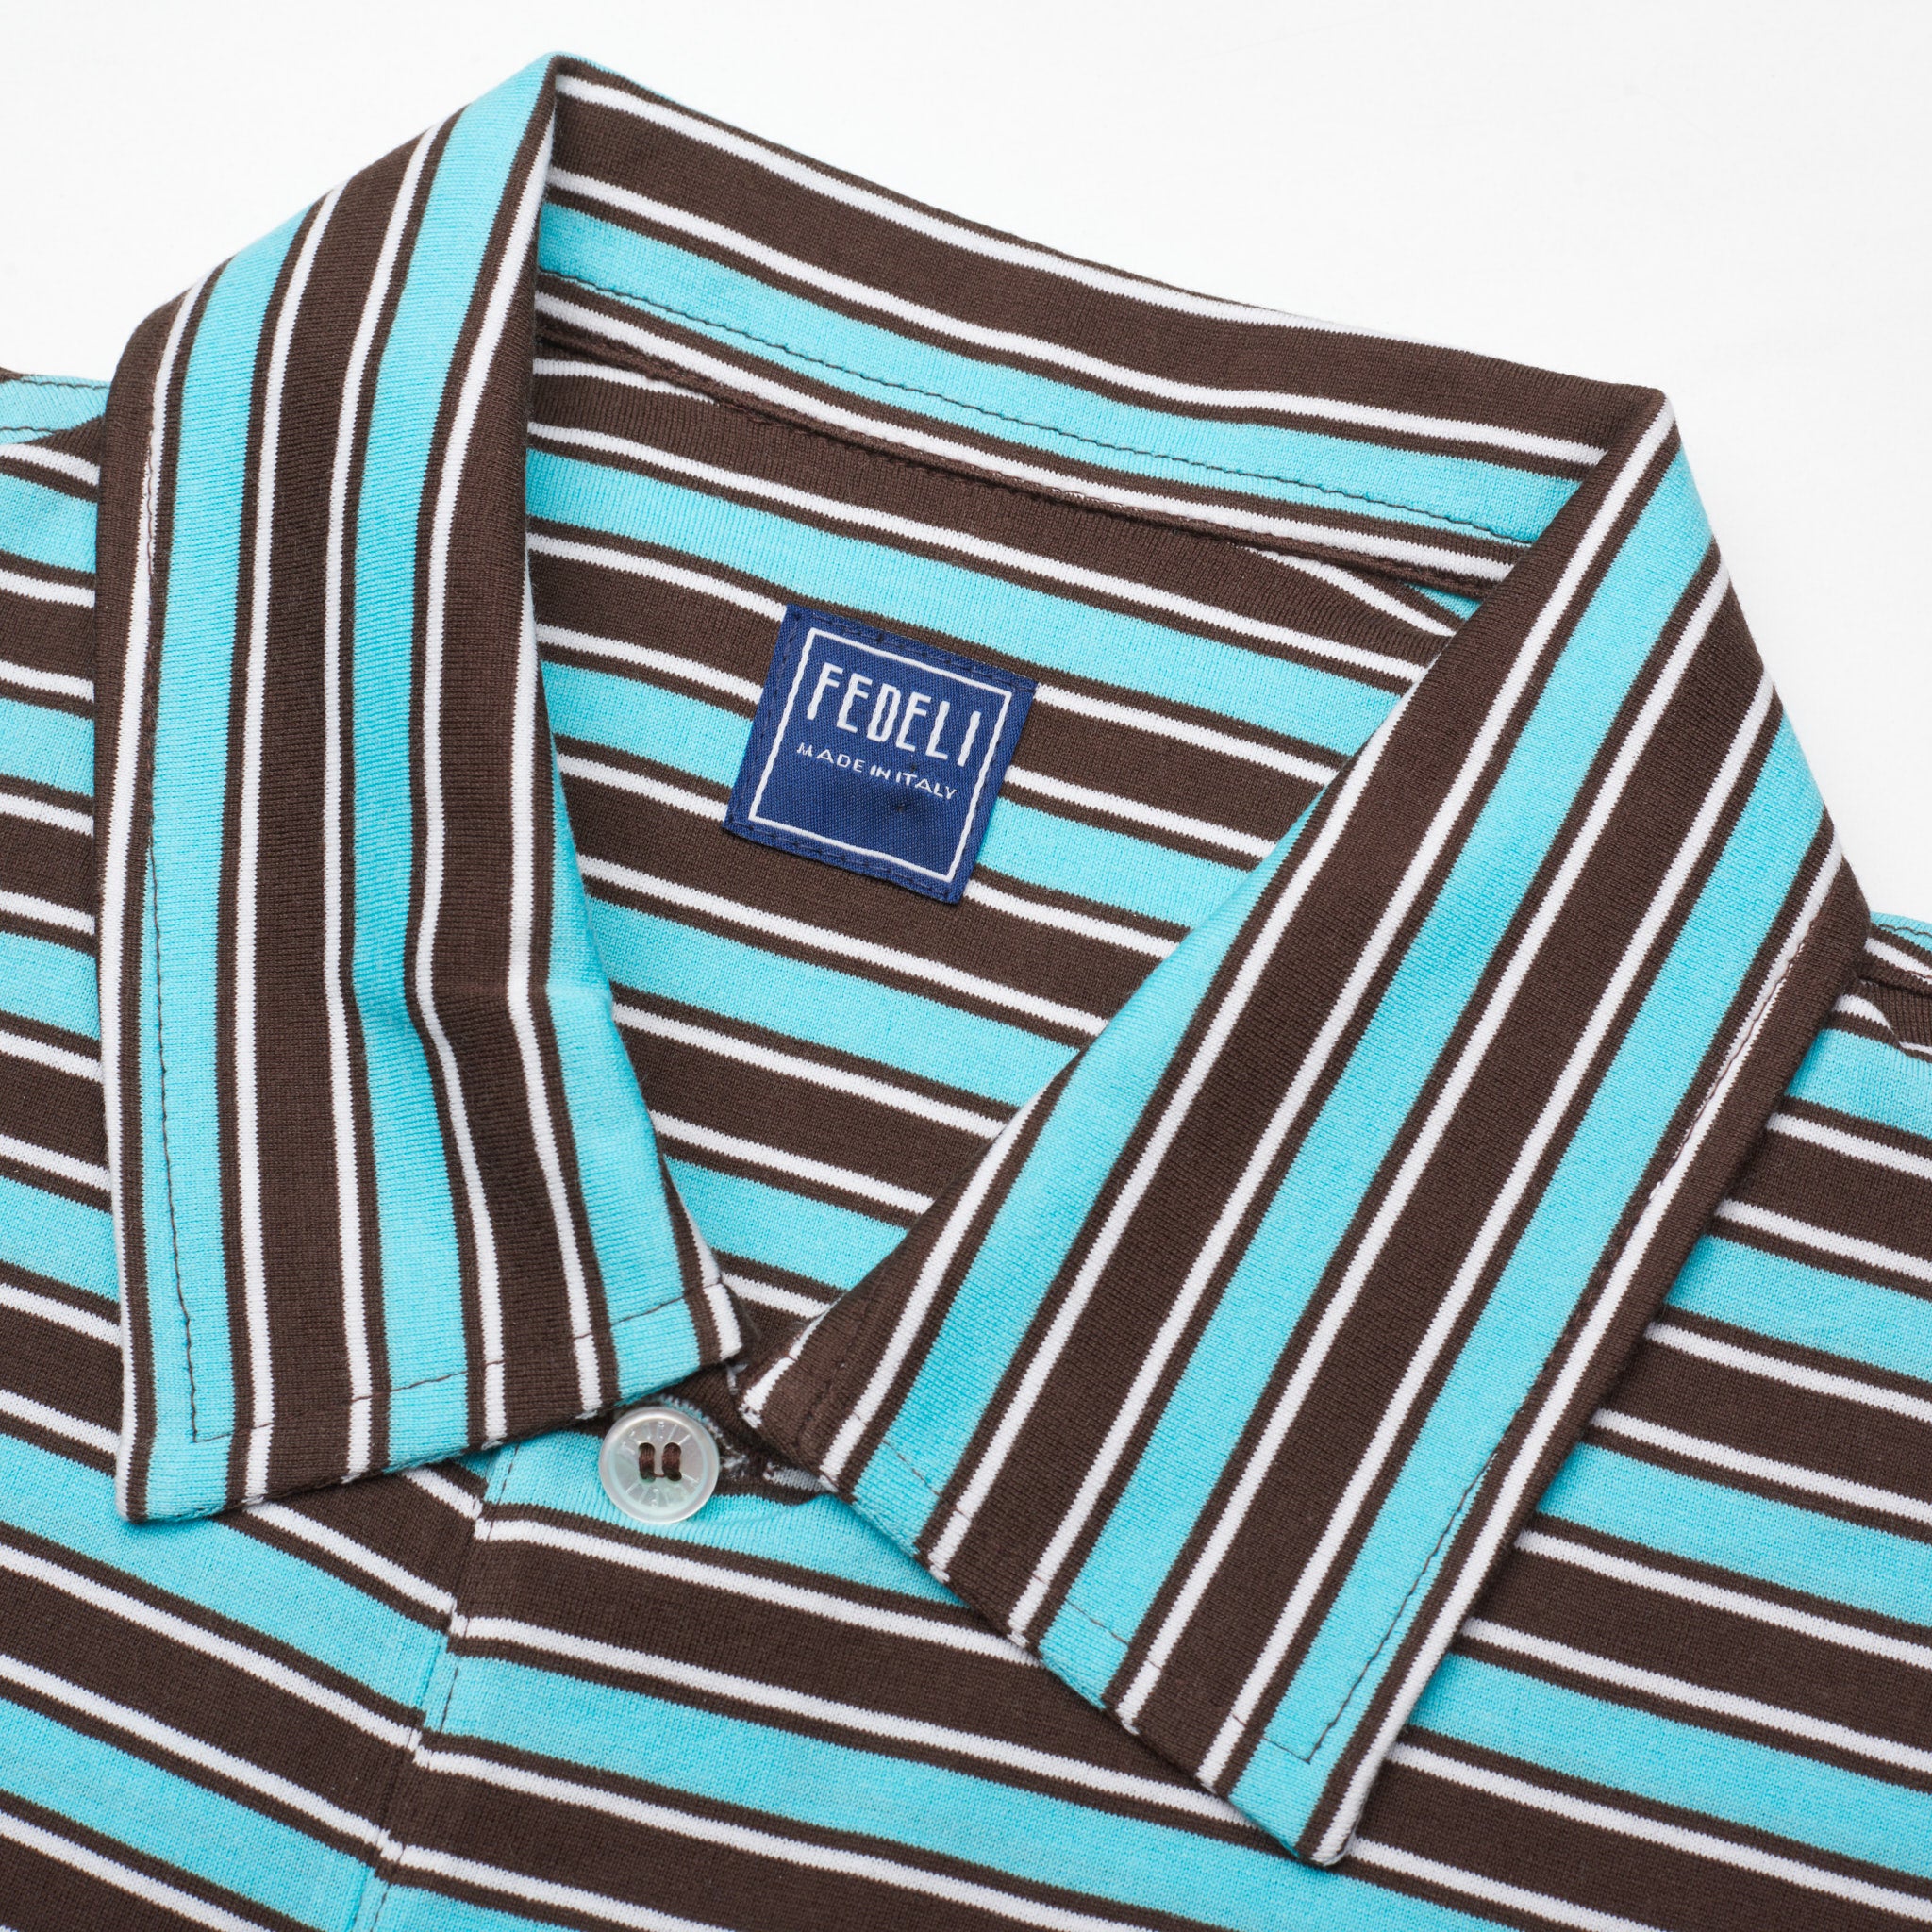 FEDELI "Florida" Multi-Color Striped Cotton Jersey Polo Shirt NEW FEDELI